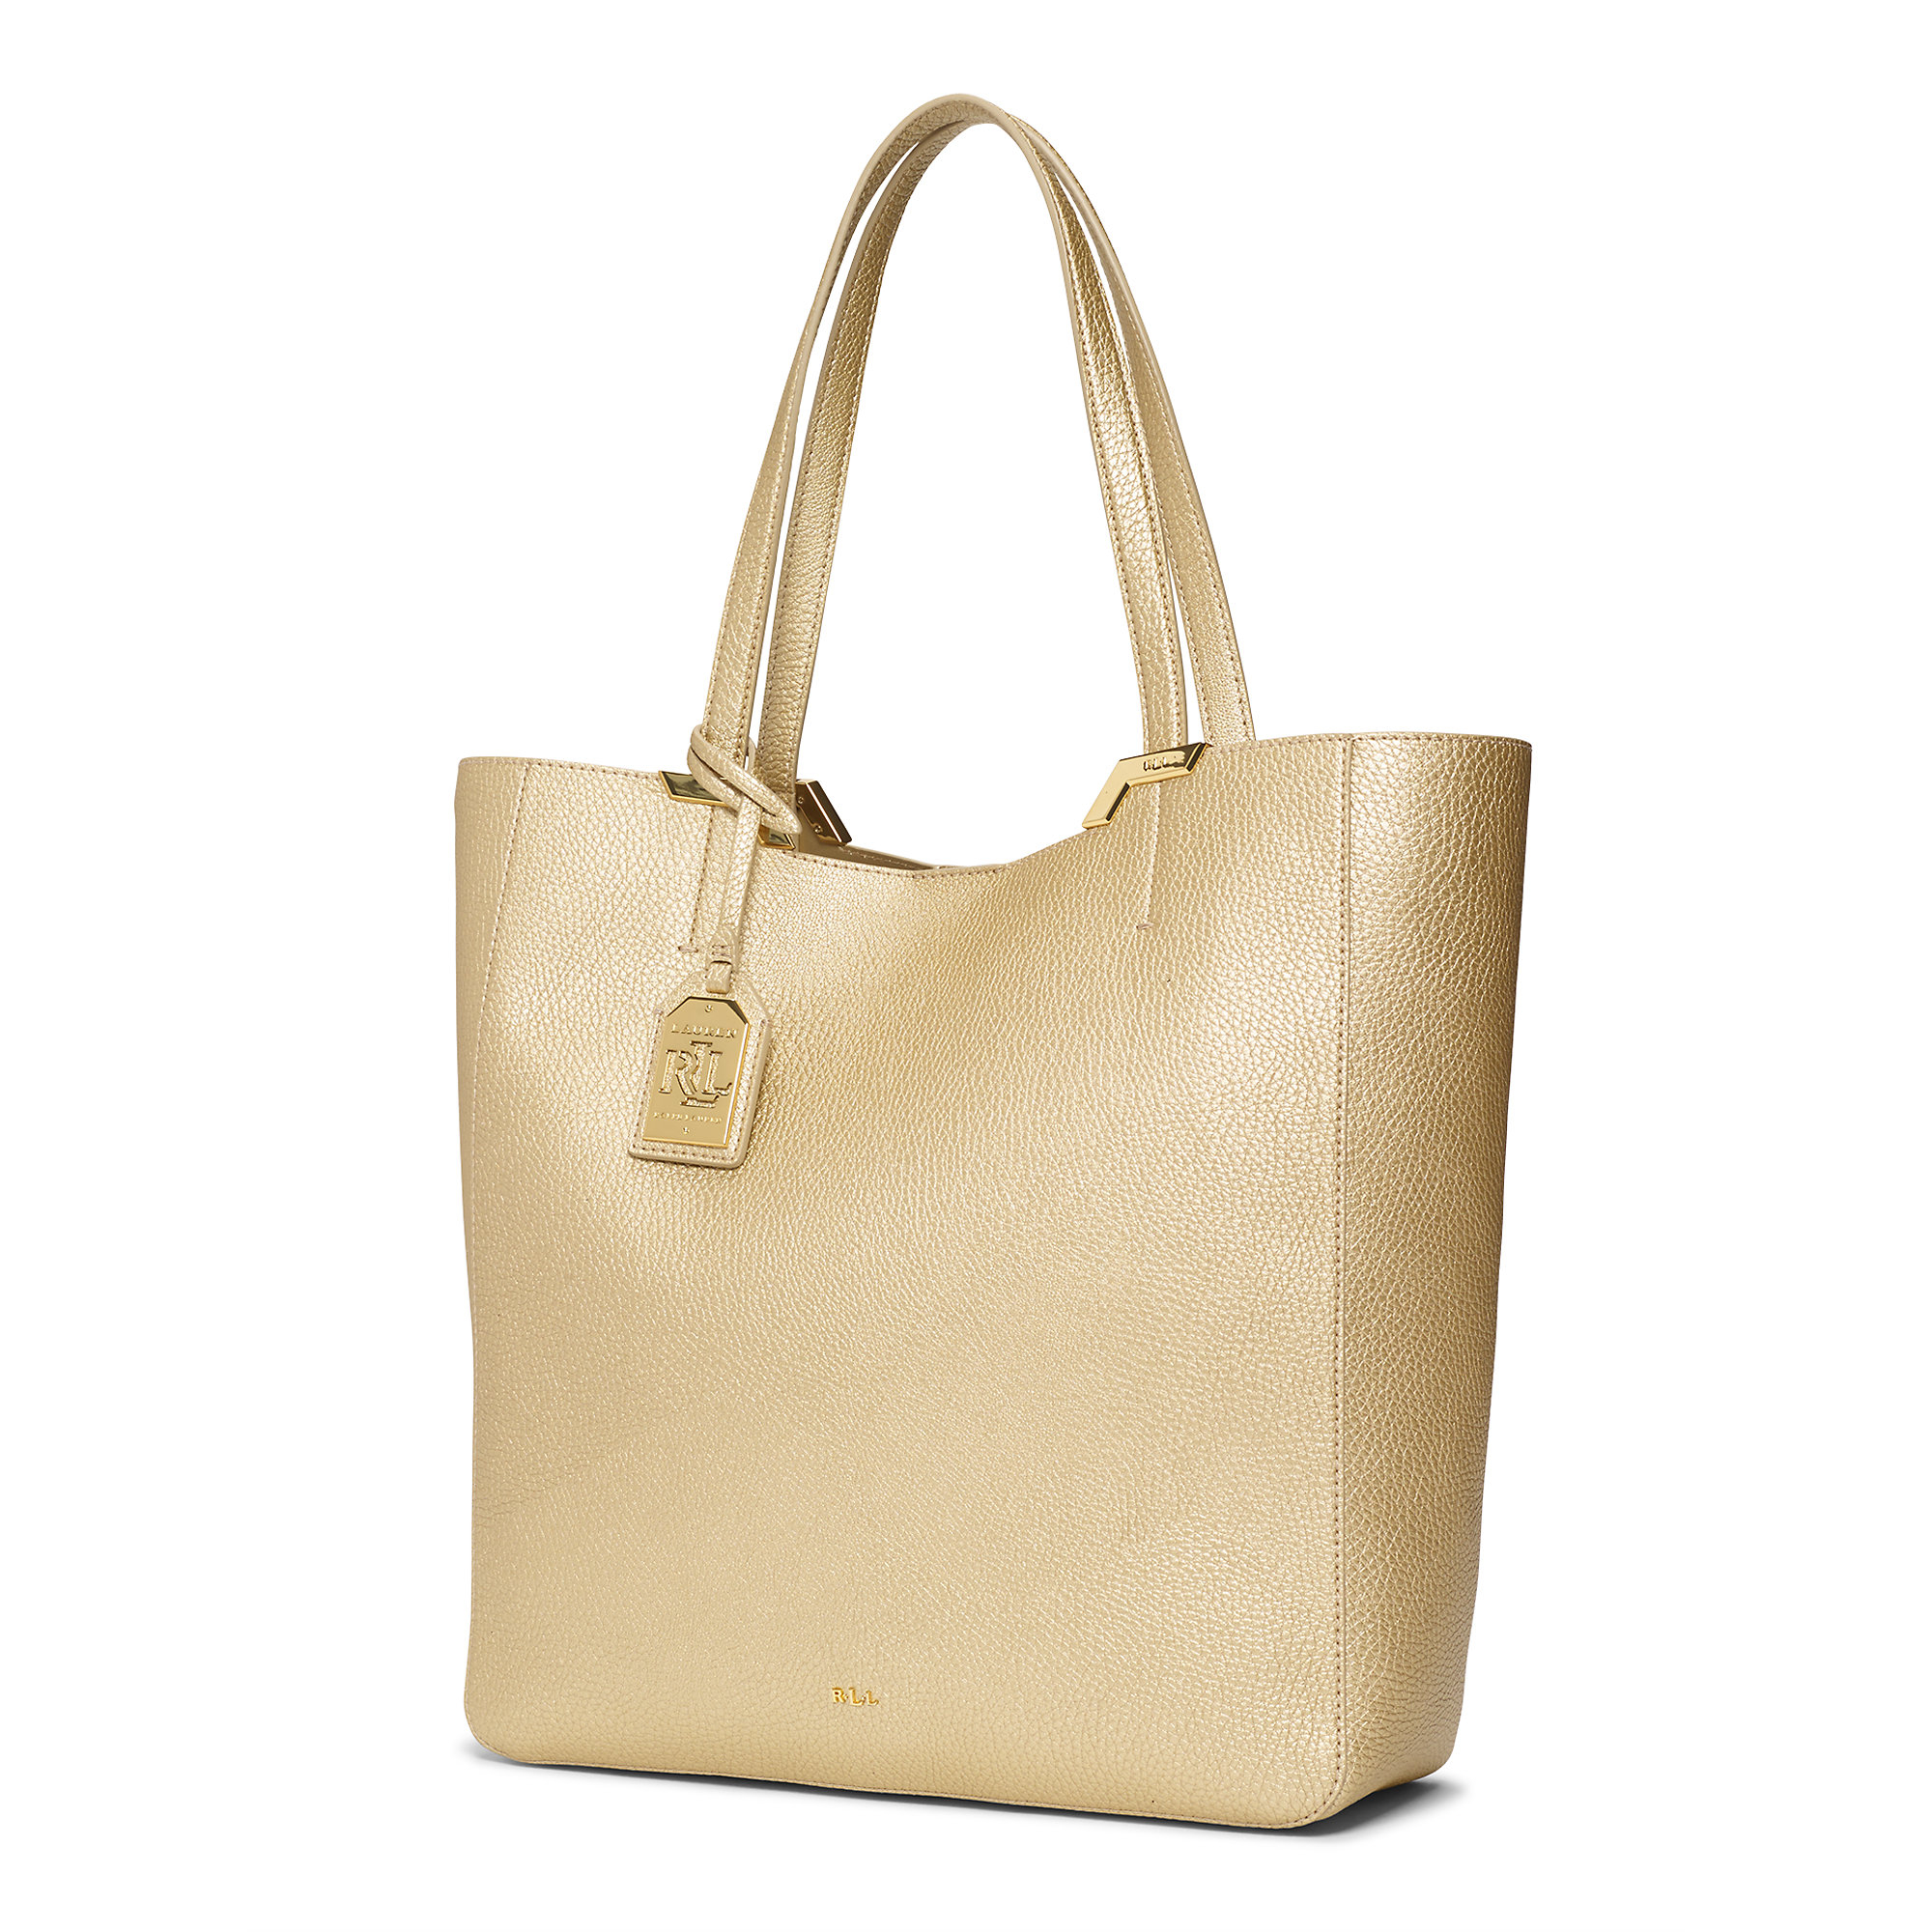 Ralph Lauren Gold Bag Cheap -